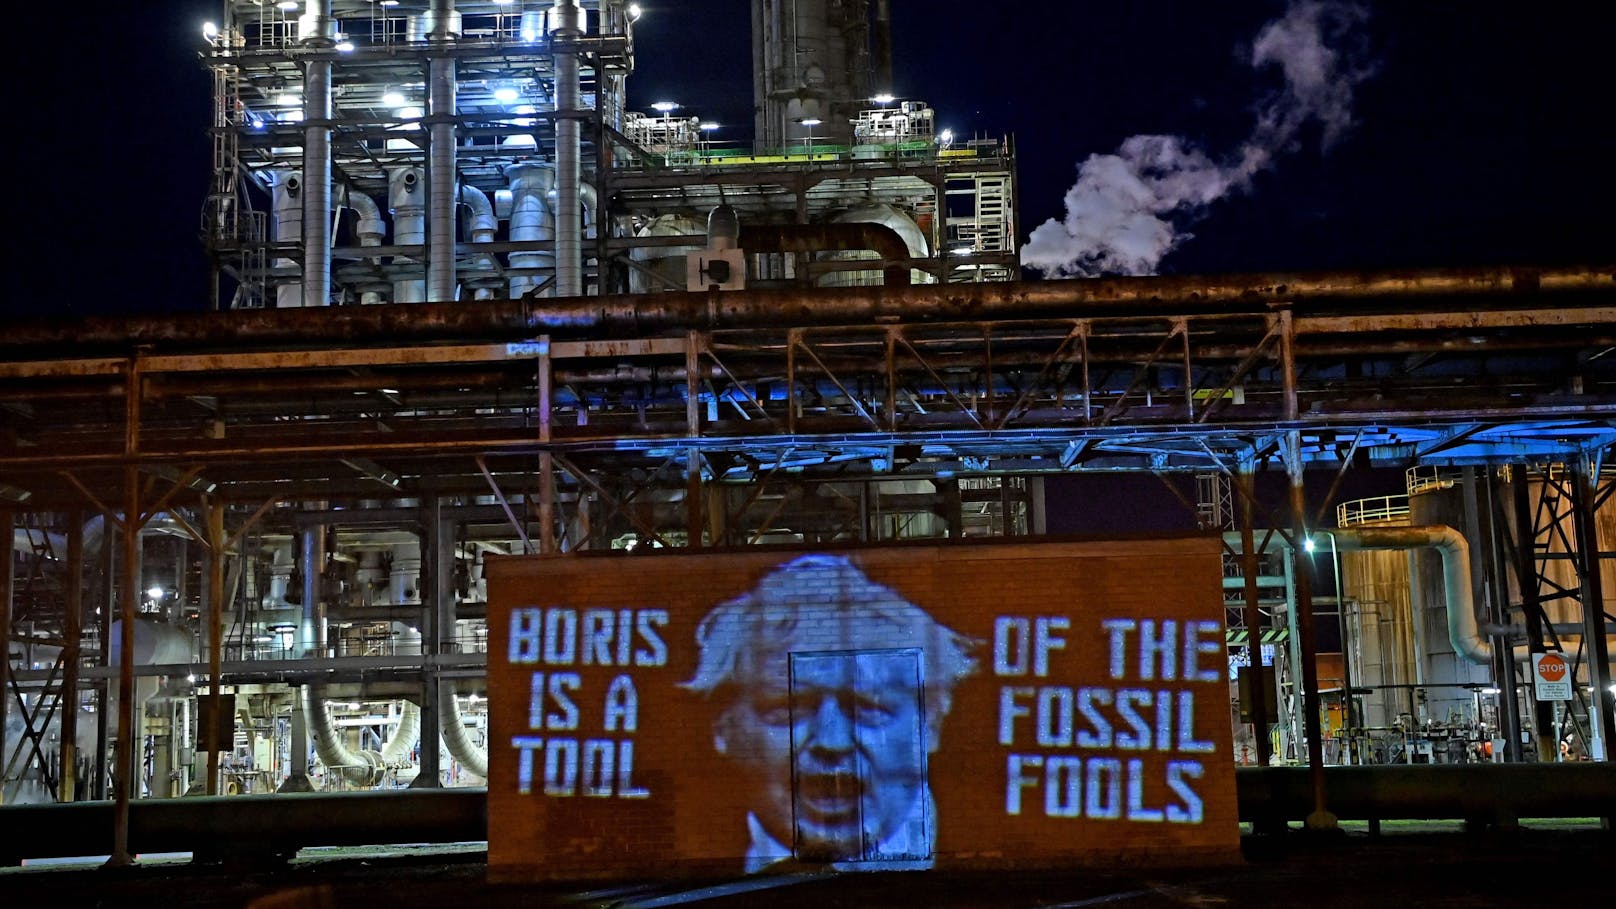 Ein Banner mit der Aufschrift "Boris ist ein Werkzeug der fossilen Narren" bei einer Raffinerie in Schottland. Aktivisten von Ocean Rebellion protestieren im Rahmen der COP26 Klimakonferenz für den Ausstieg aus fossilen Energieträgern (Öl, Gas und Kohle).